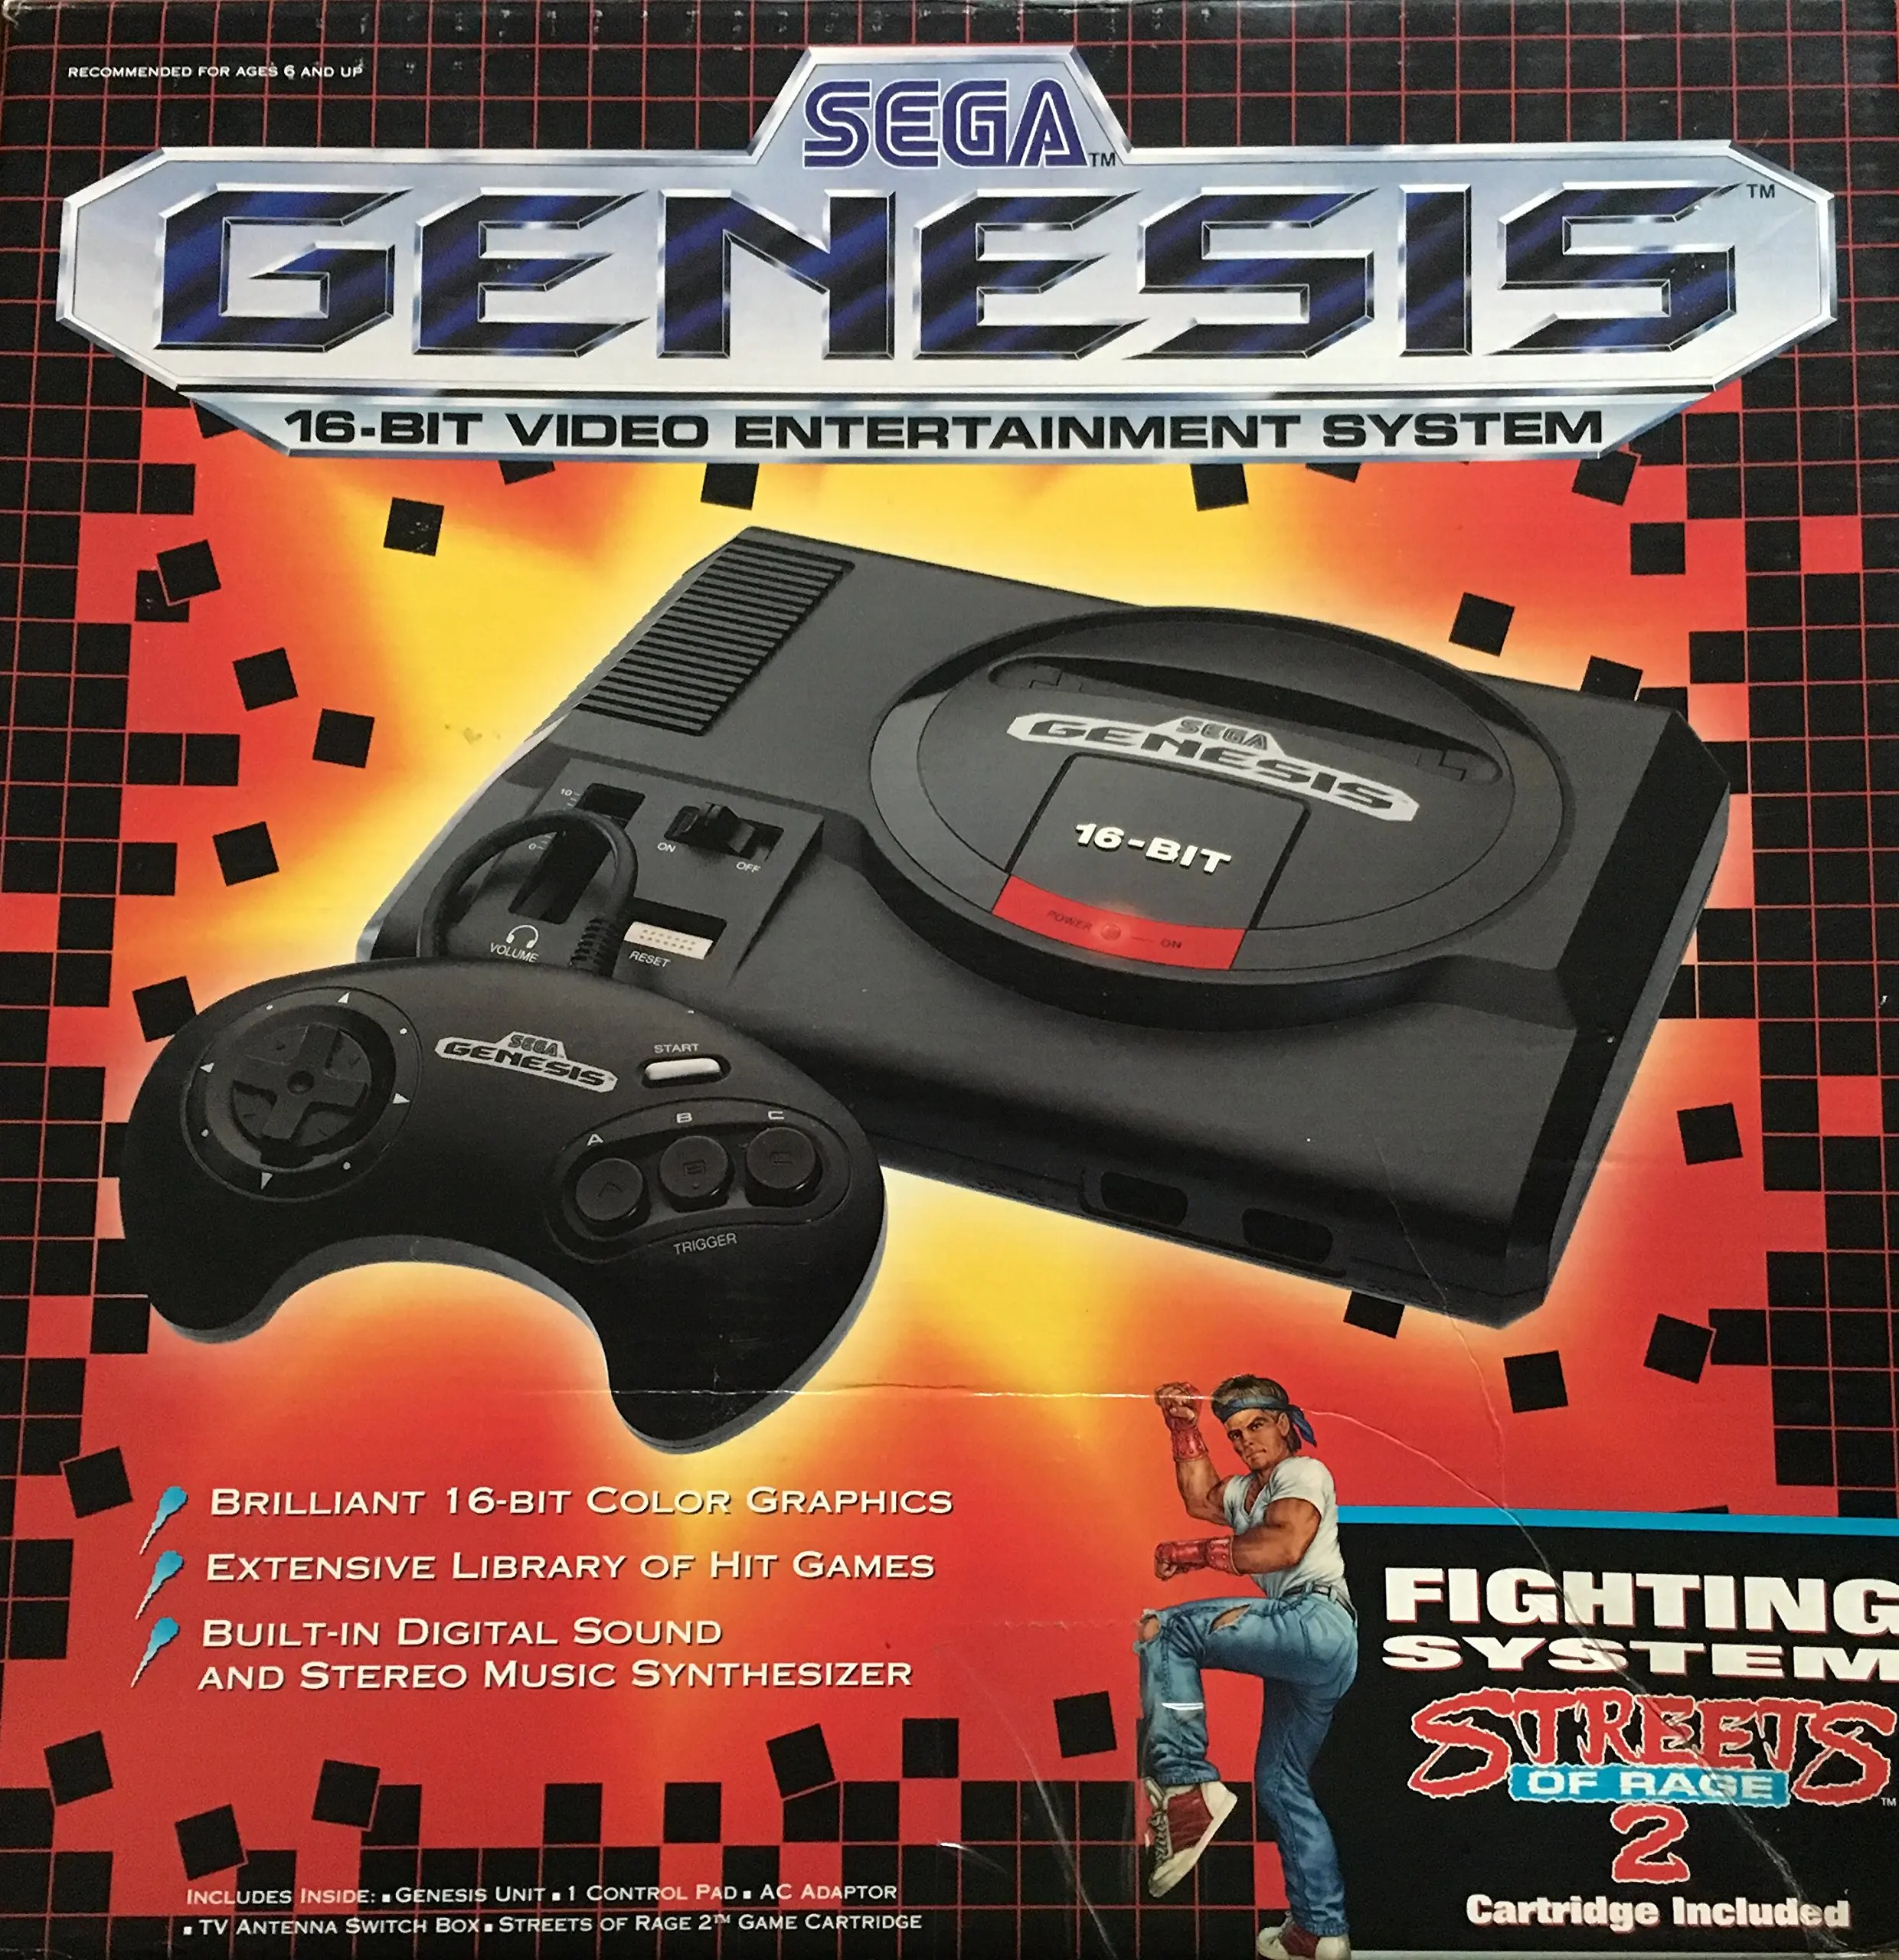 Sega mega drive and genesis classics steam обзор фото 60